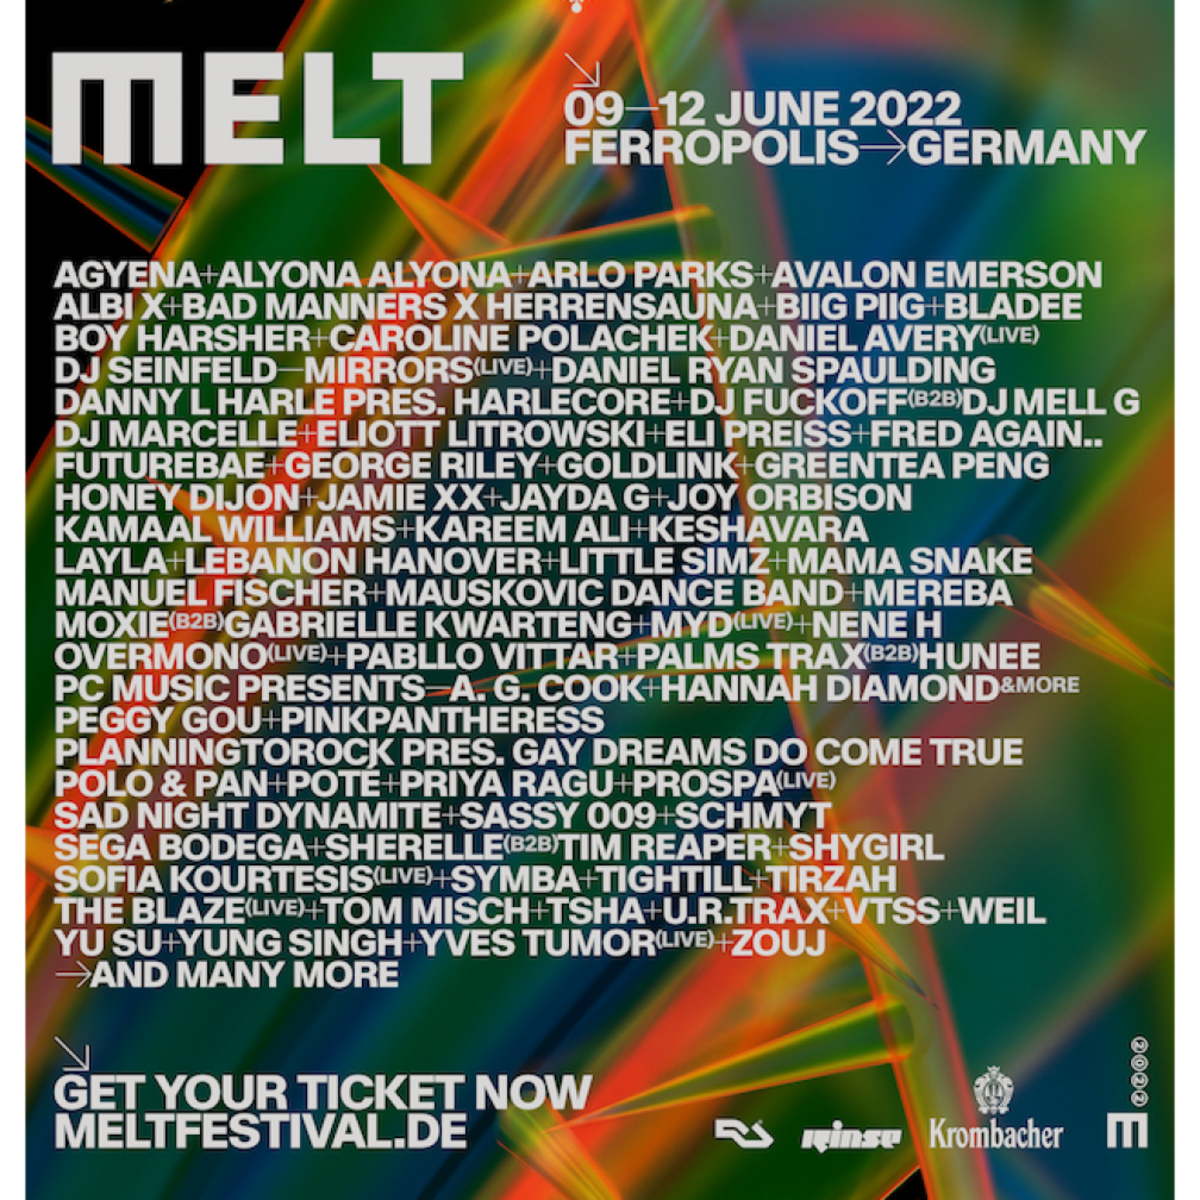 melt-2022-lineup-announce